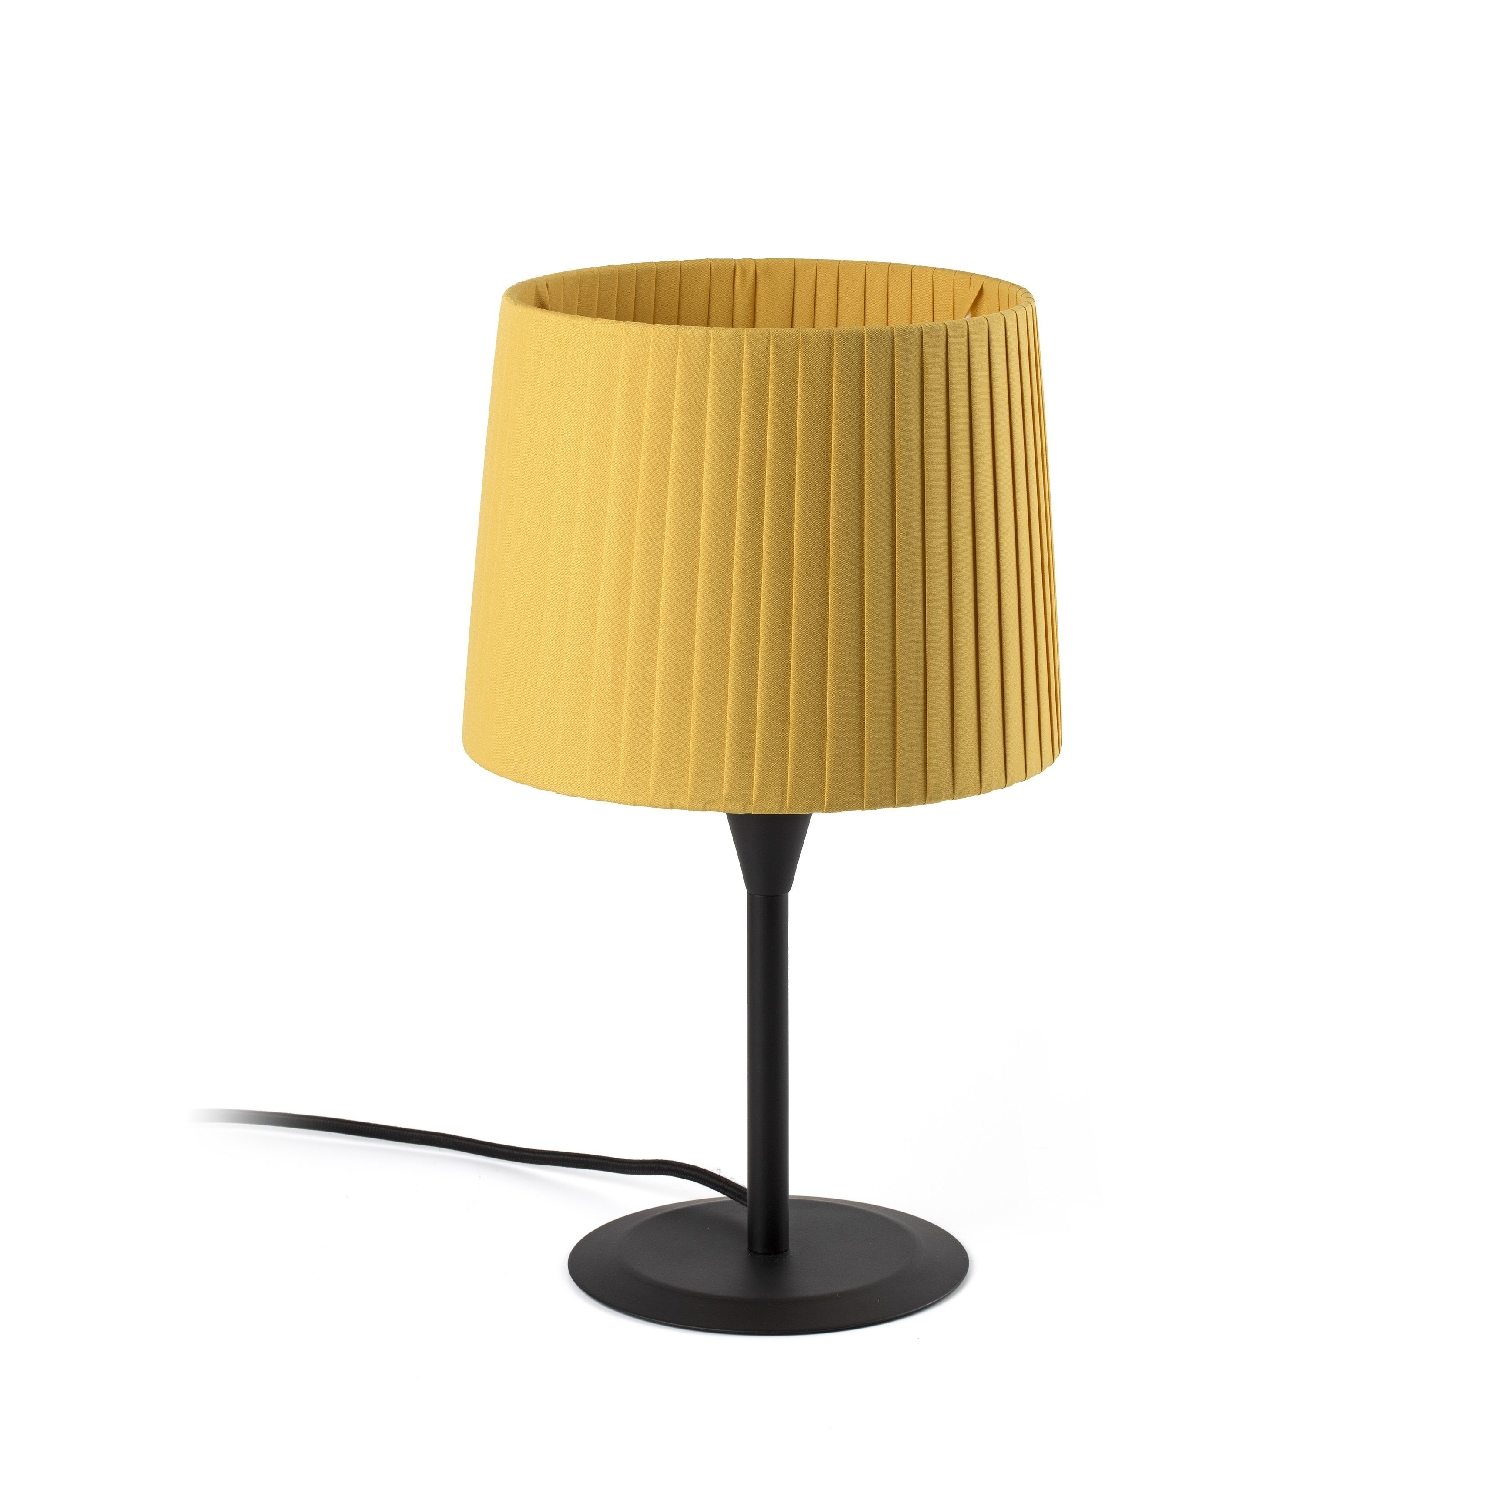 Lampa de masa moderna design elegant SAMBA negru/galben 64311-39